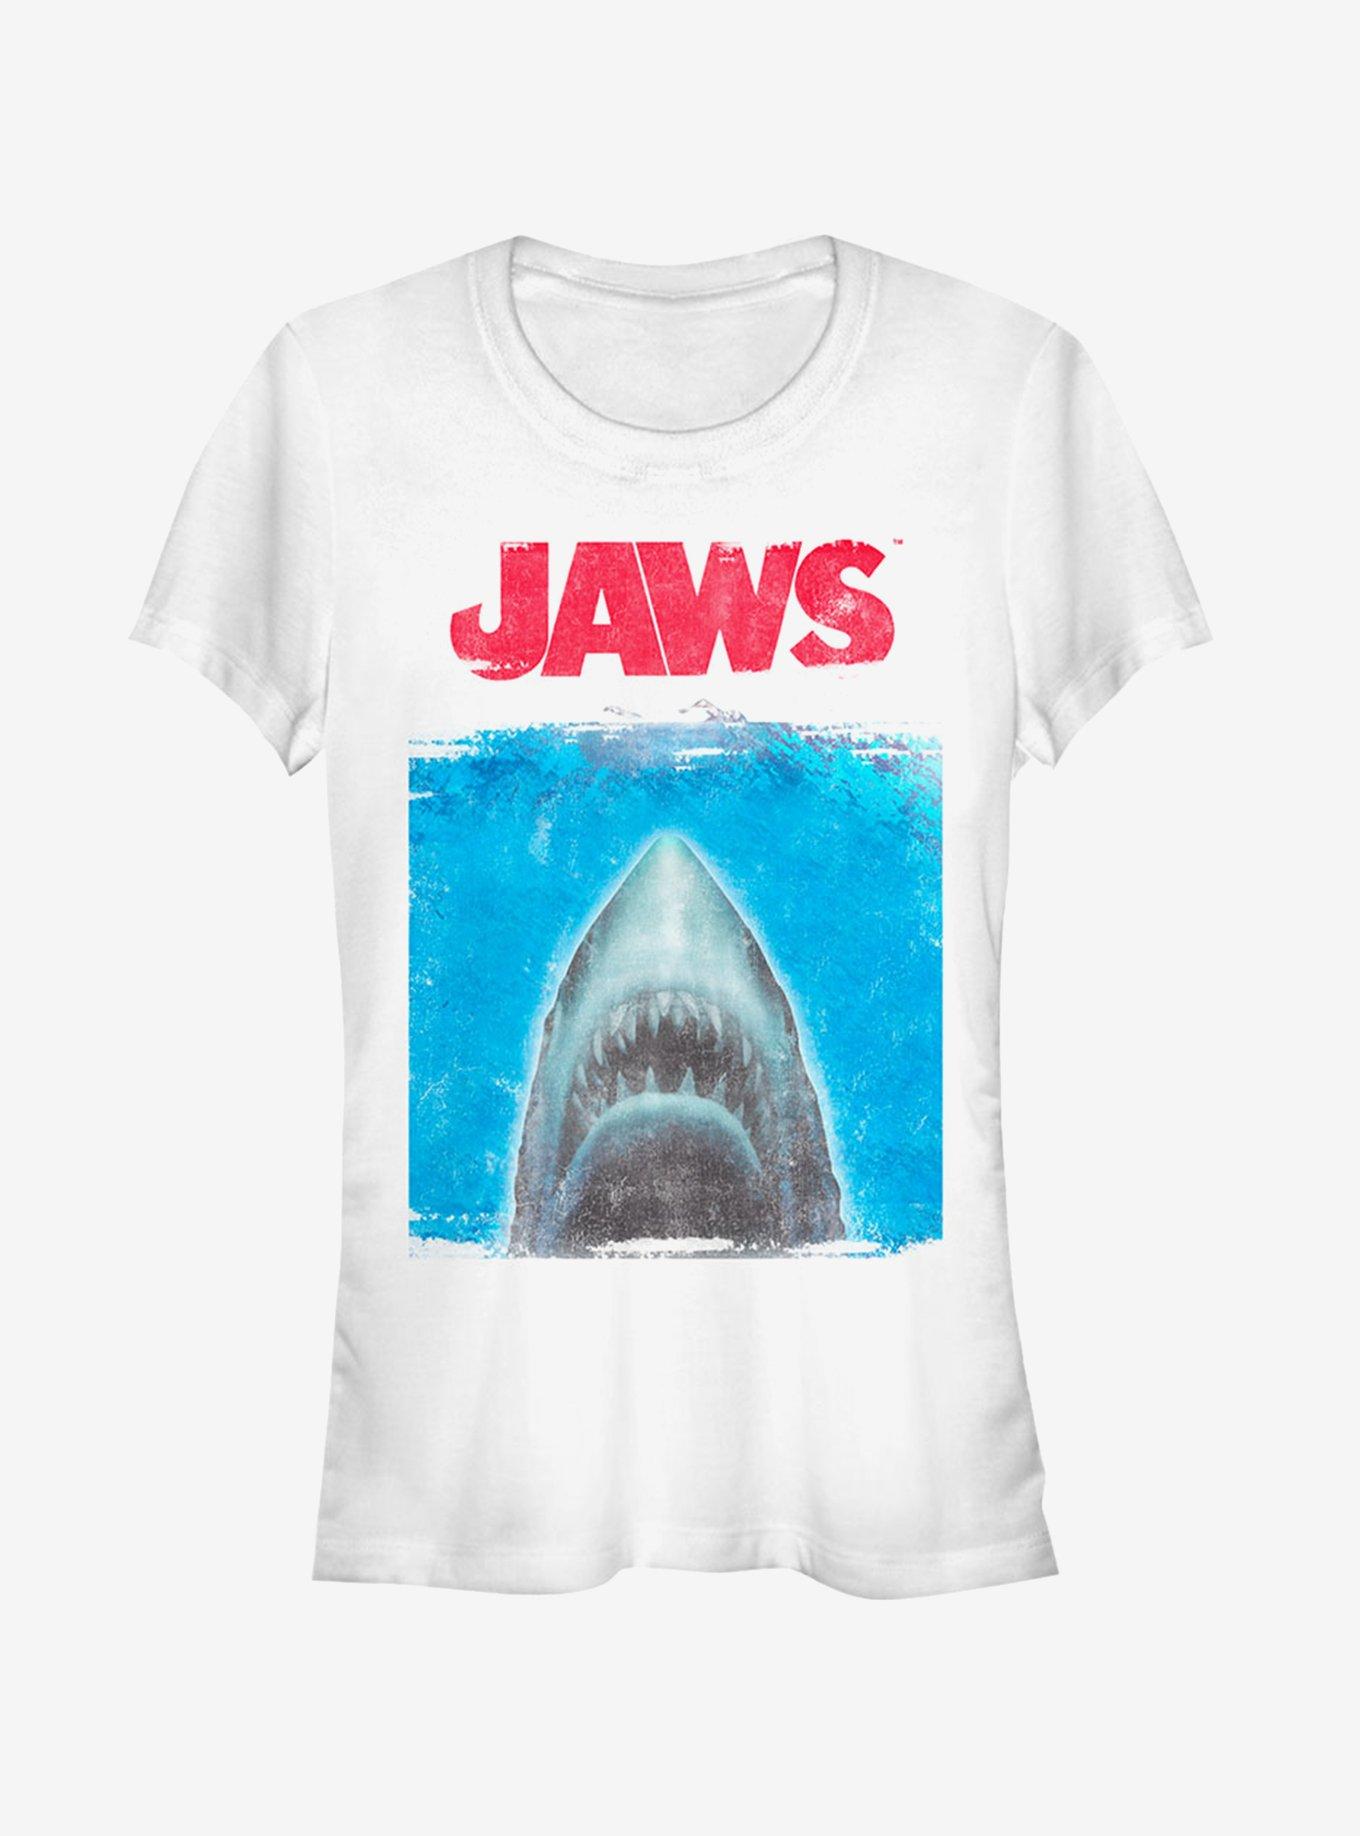 Shark Movie Poster Girls T-Shirt - WHITE | Hot Topic